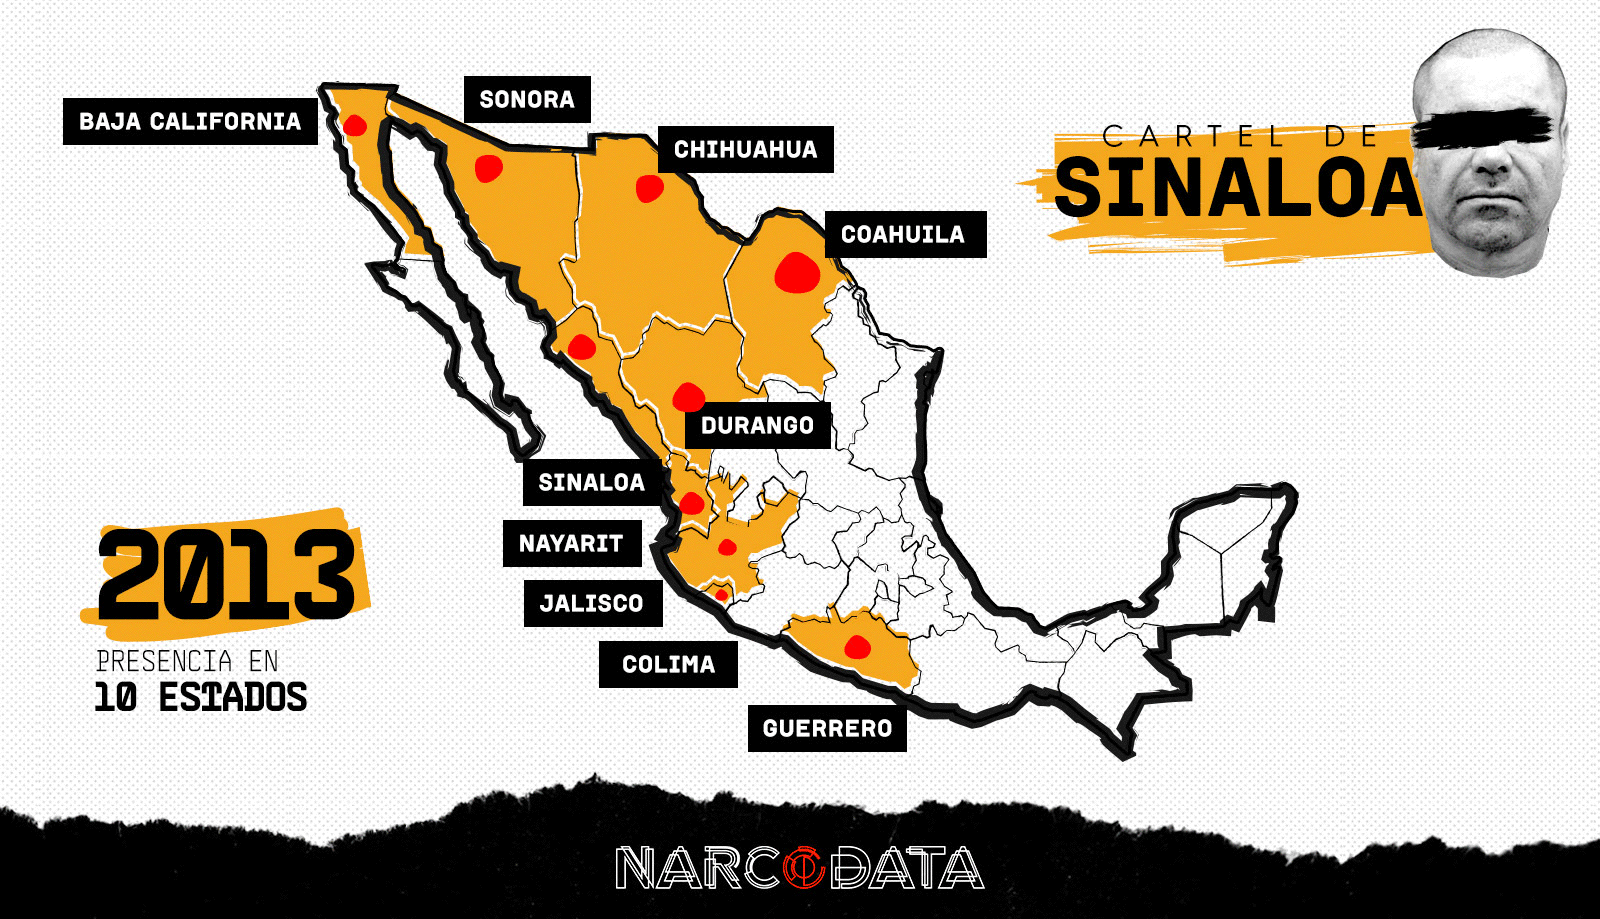 Con El Chapo detenido y extraditado, el cártel de Sinaloa reduce su presencia en México